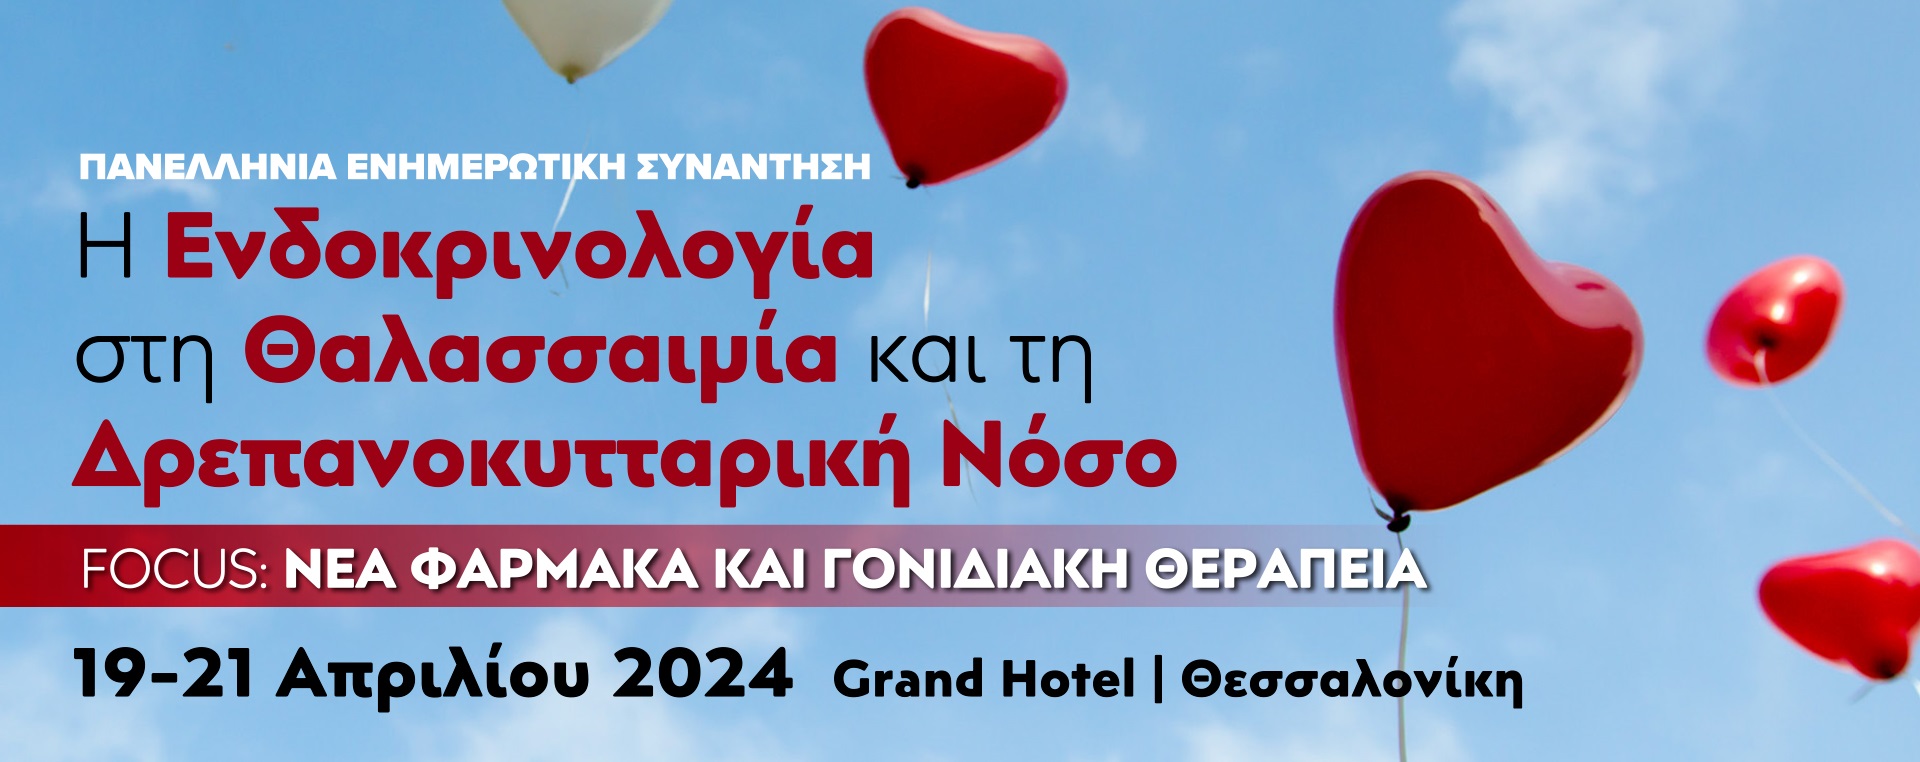 Πρόγραμμα της Πανελλήνιας Ενημερωτικής Συνάντησης για τη Θαλασσαιμία και τη Δρεπανοκυτταρική Νόσο, Θεσσαλονίκη 19-21/4/2024, Grand Hotel Palace.